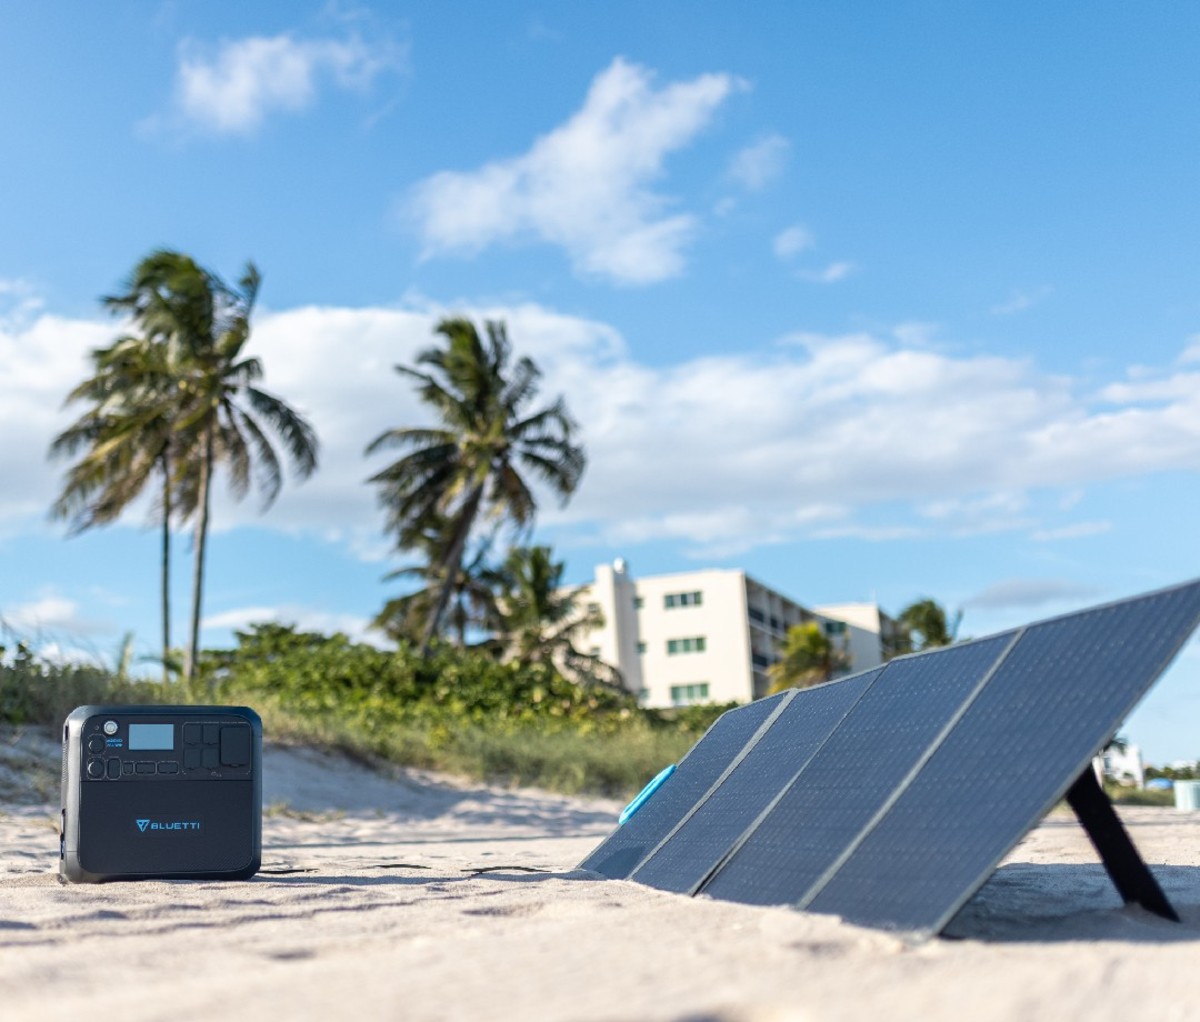 Open zonnepanelen op het strand naast de draagbare elektriciteitscentrale van Bluetti